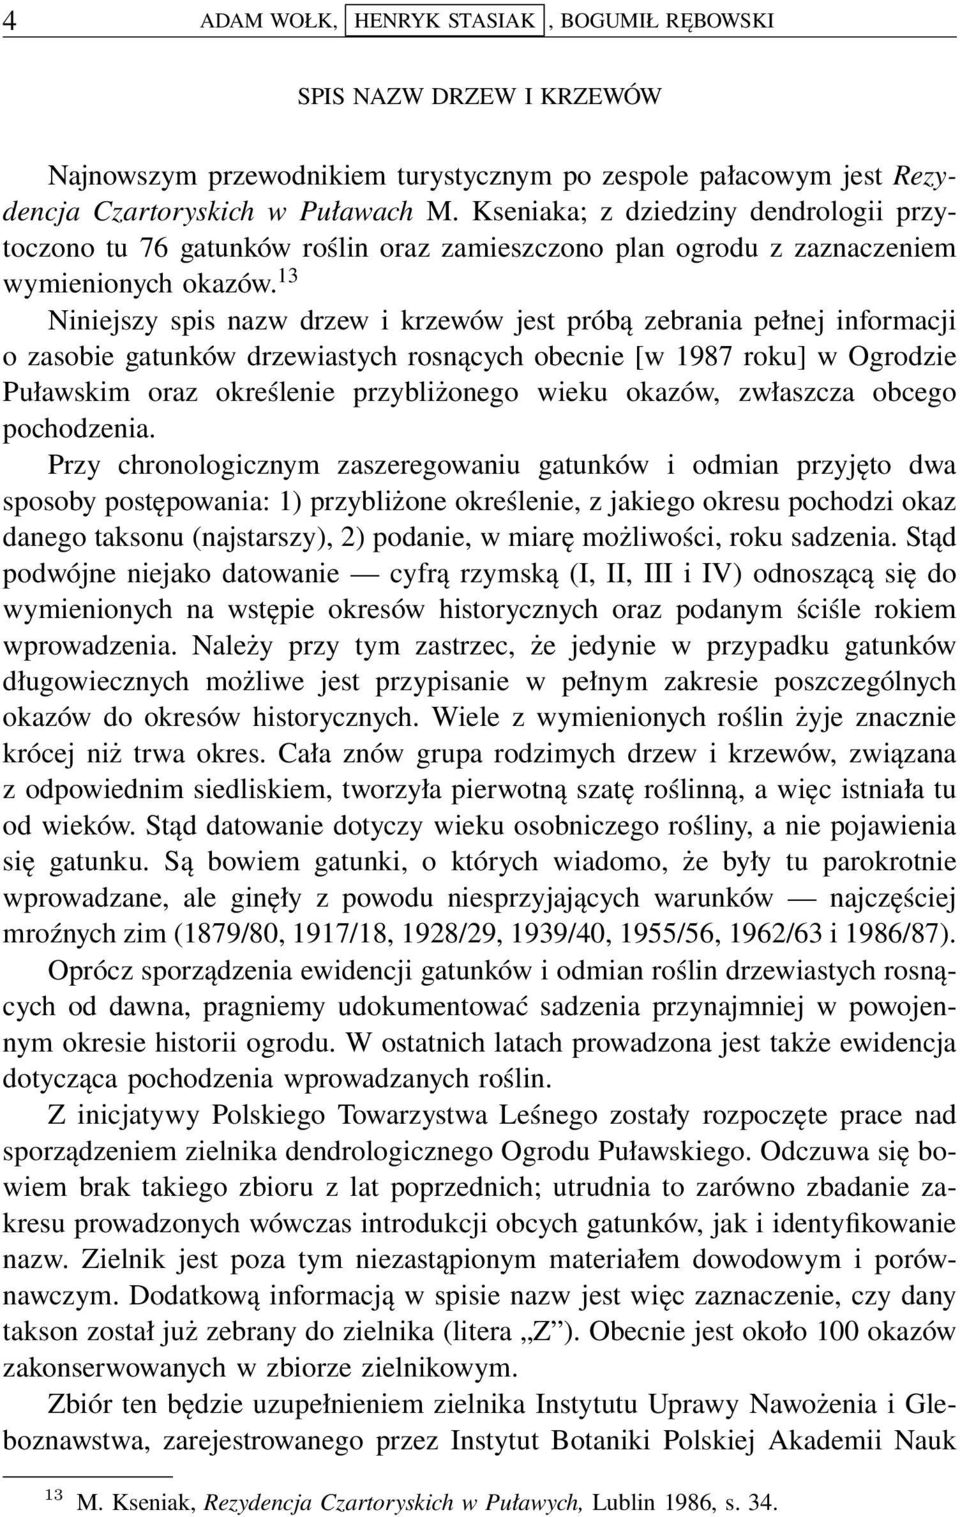 13 Niniejszy spis nazw drzew i krzewów jest próbą zebrania pełnej informacji o zasobie gatunków drzewiastych rosnących obecnie [w 1987 roku] w Ogrodzie Puławskim oraz określenie przybliżonego wieku